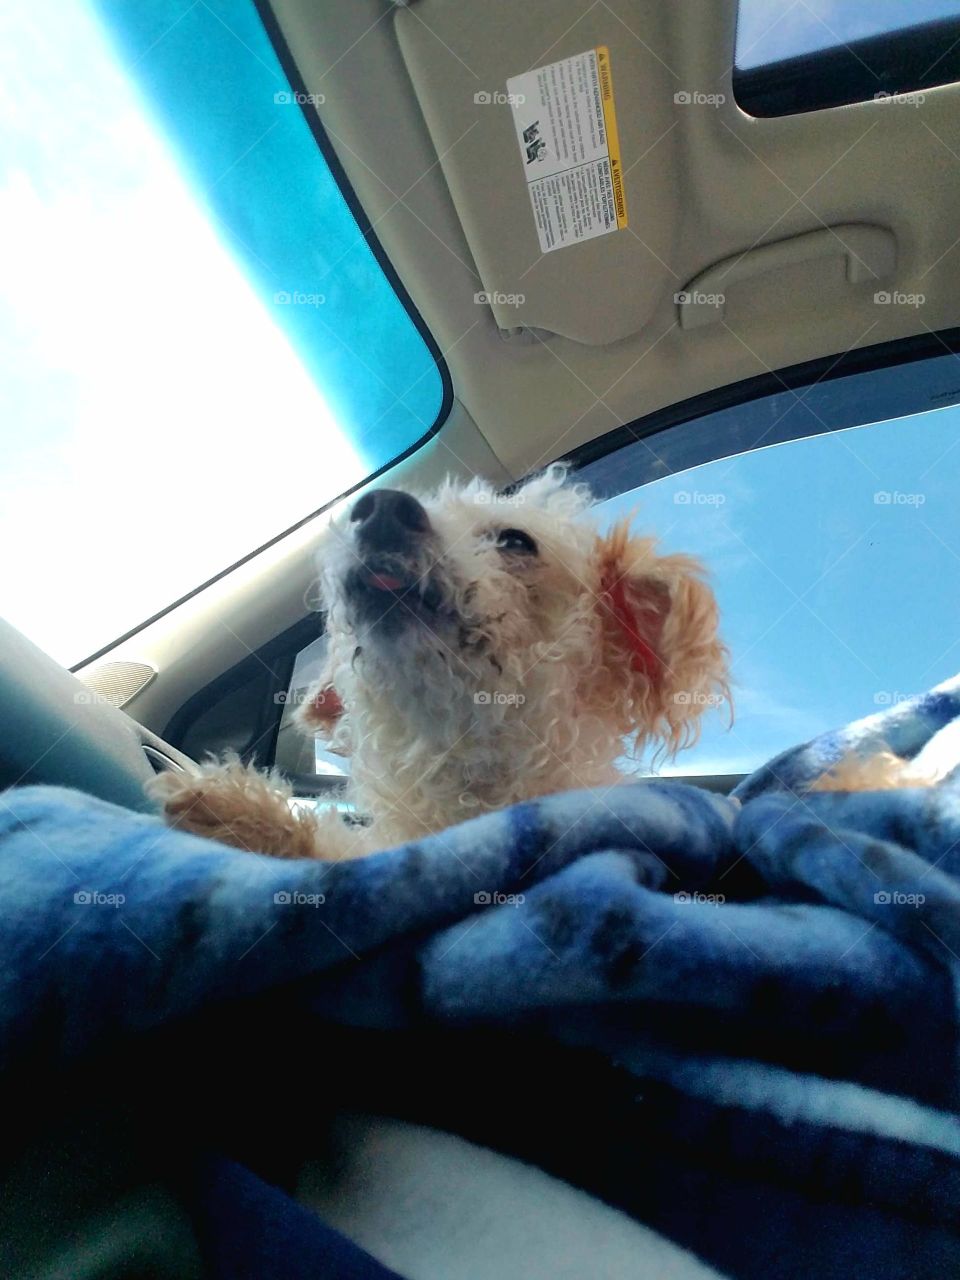 Dog enjoying car ride in front seat